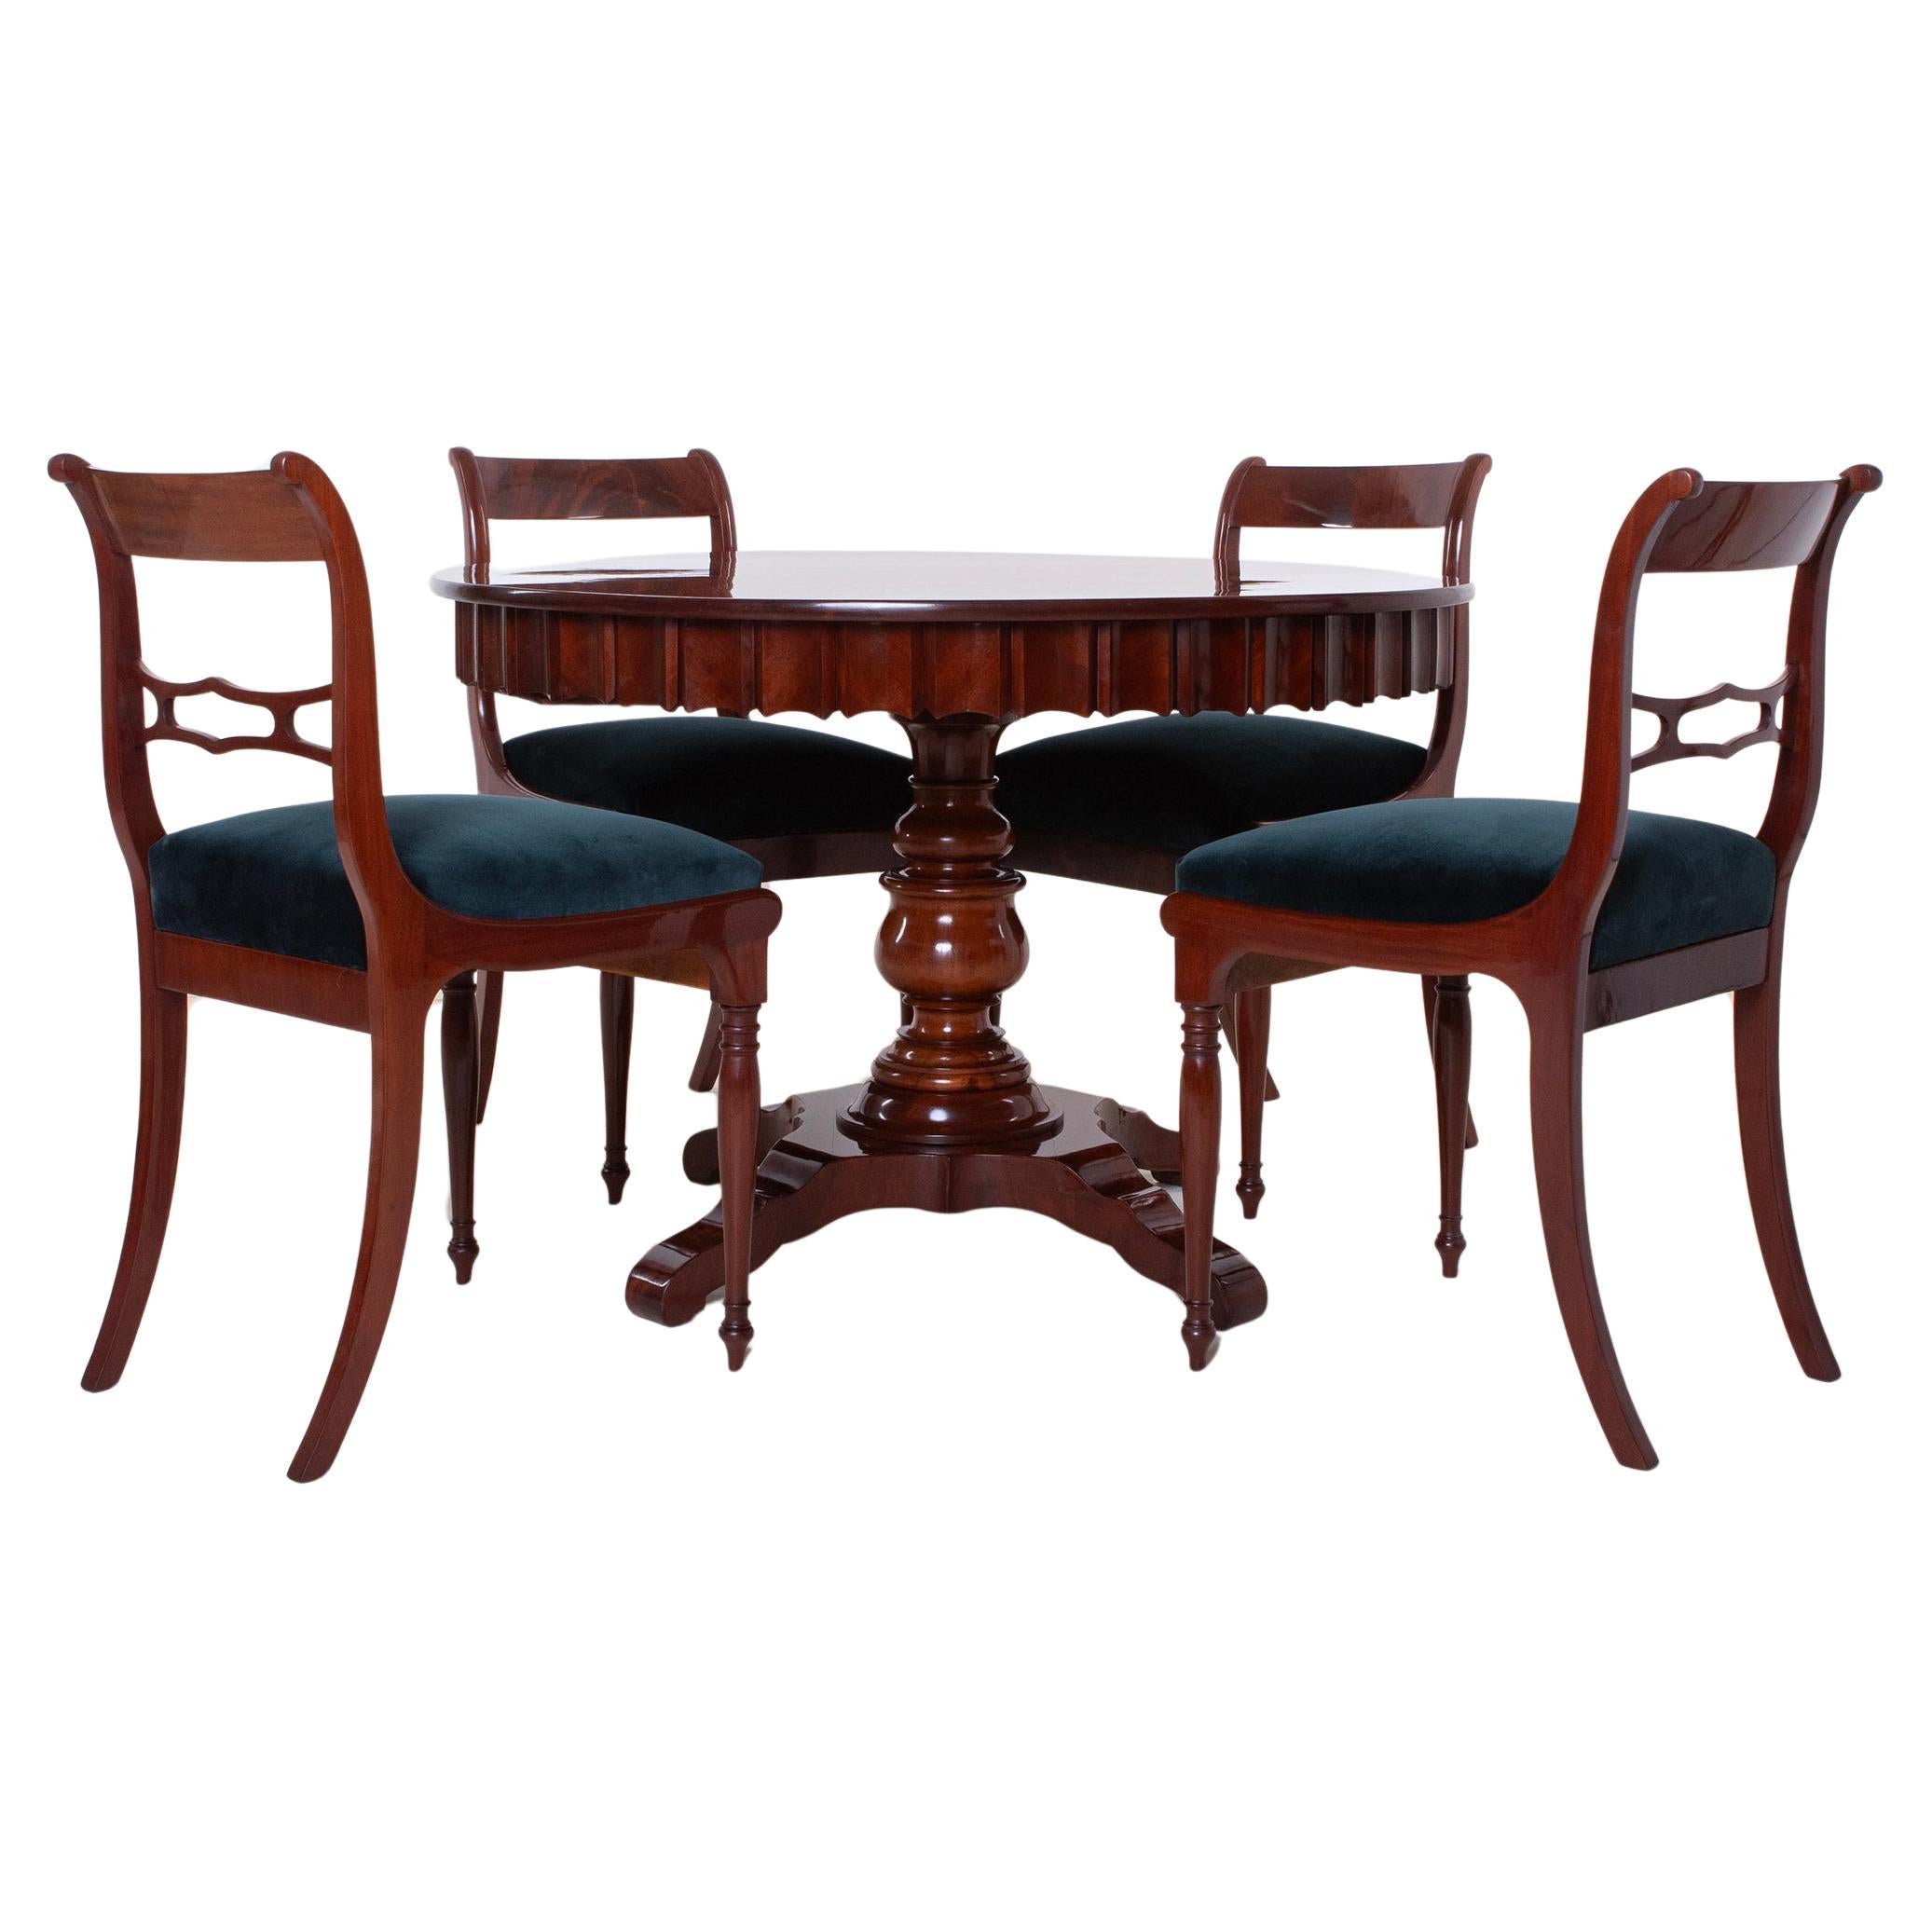 Ensemble de salle à manger Biedermeier, table ronde, 4 chaises, entièrement restaurée, 19ème siècle